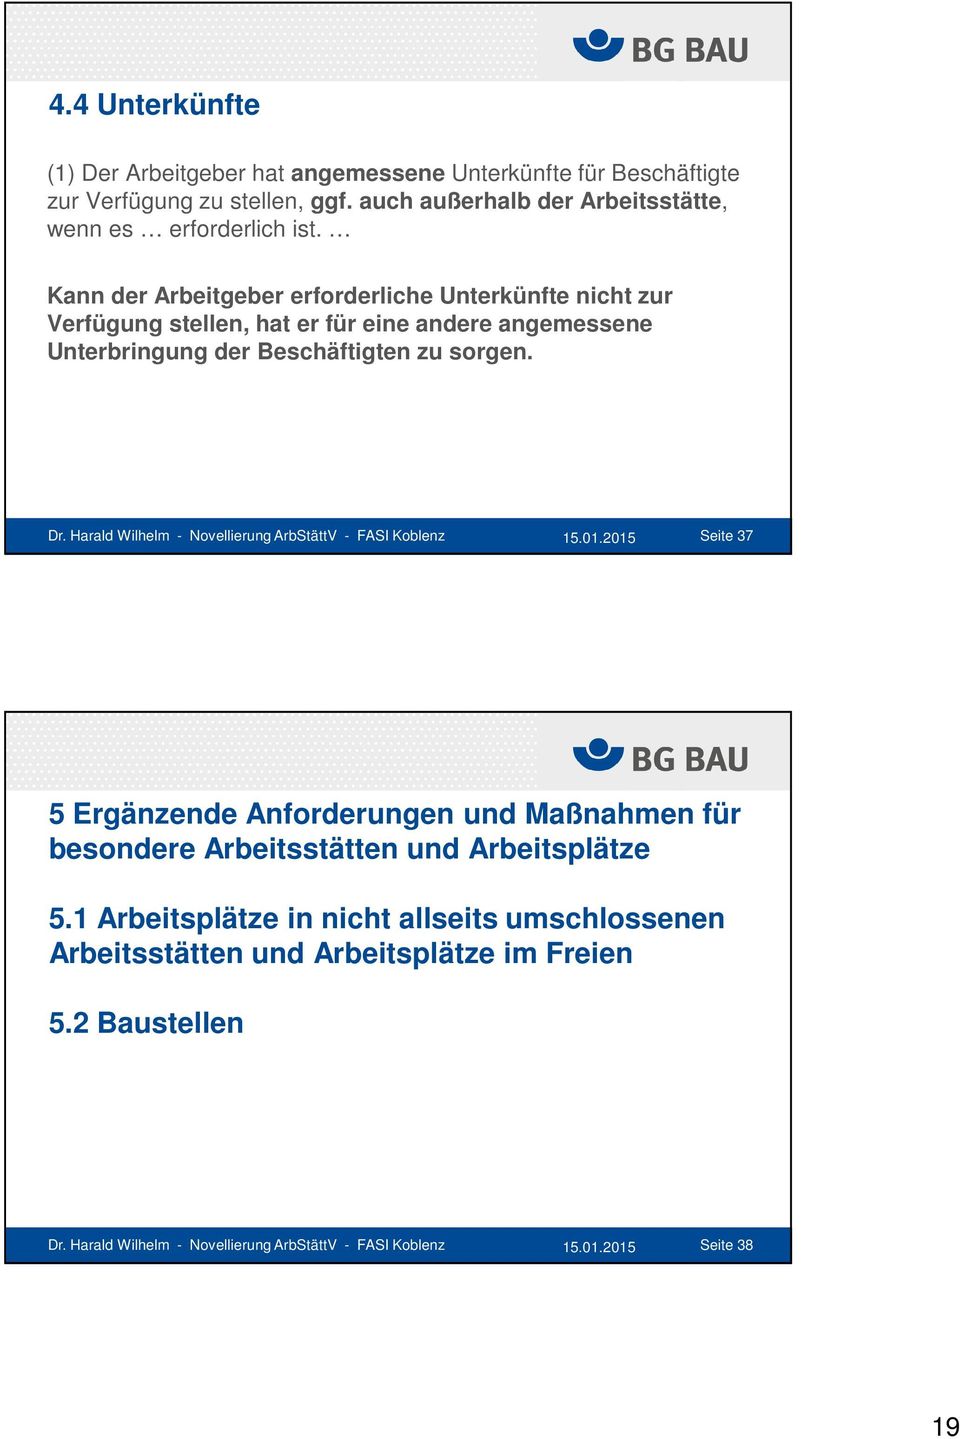 Harald Wilhelm - Novellierung ArbStättV - FASI Koblenz 15.01.2015 Seite 37 5 Ergänzende Anforderungen und Maßnahmen für besondere Arbeitsstätten und Arbeitsplätze 5.